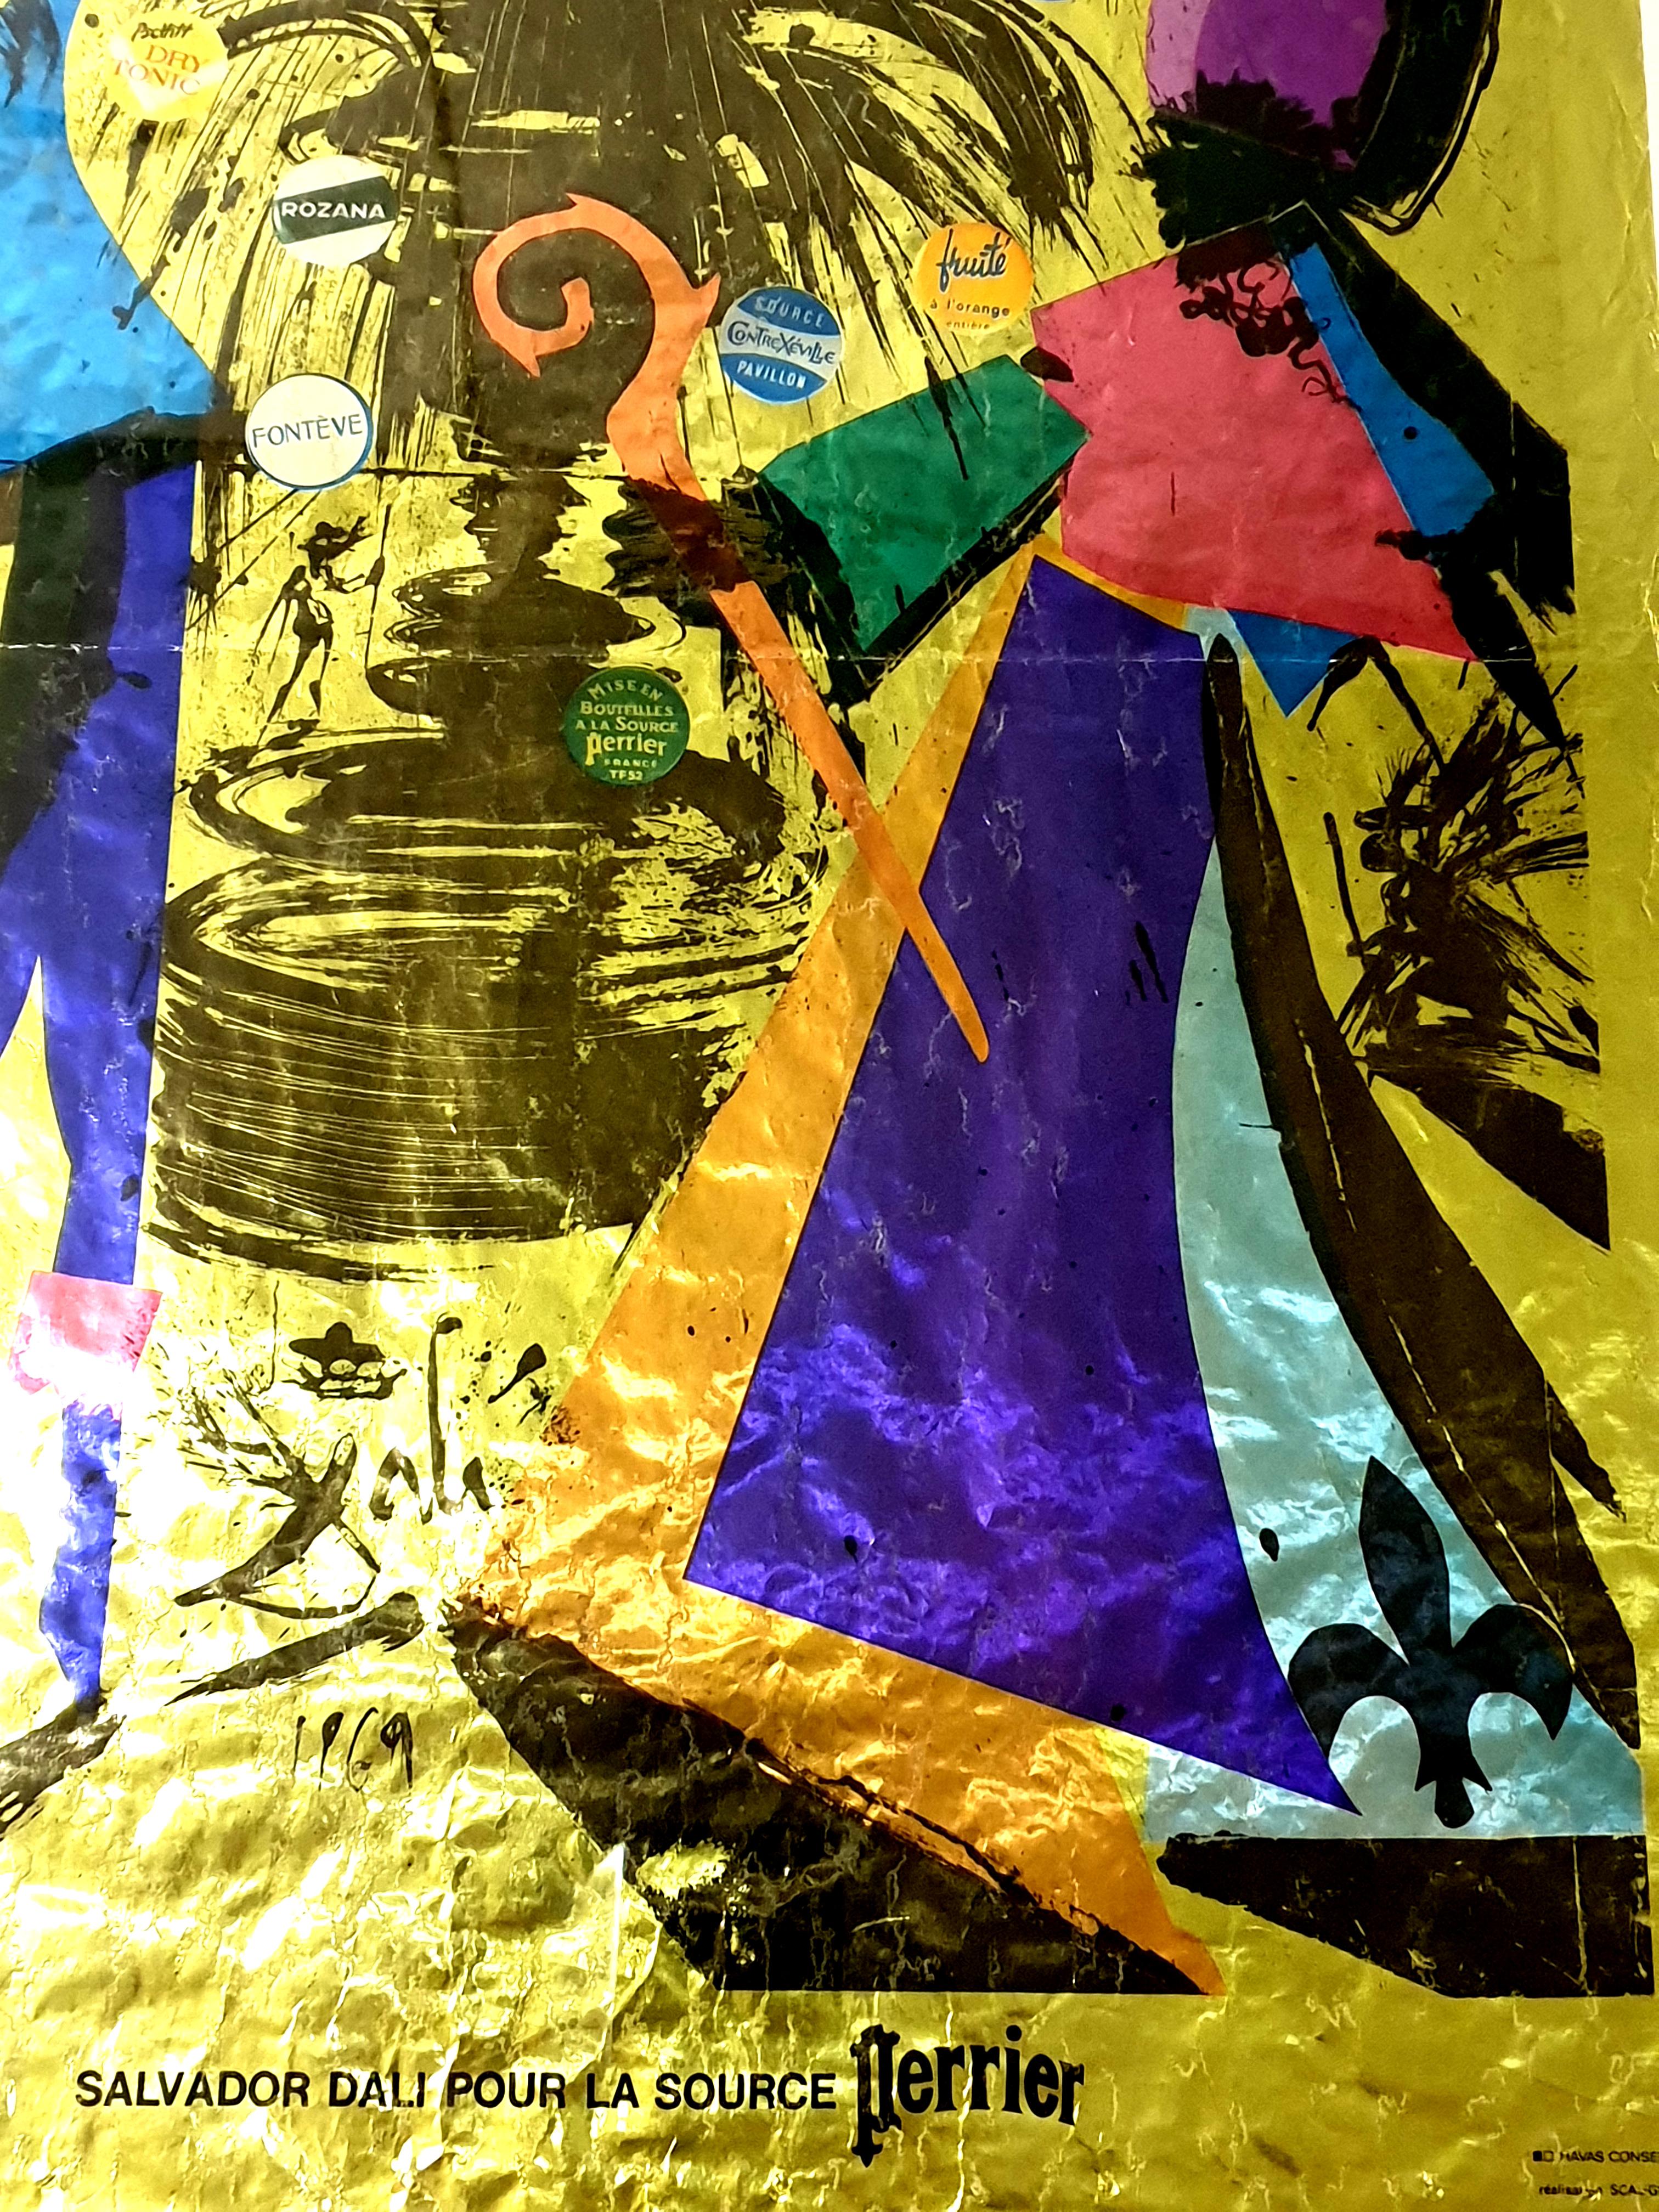 Salvador Dali -  Perrier - Affiche lithographique ancienne
Sur papier doré
Signé dans la plaque 
1970
Dimensions : 60 x 42 cm
Référence : Champ page 233
Quelques pliages